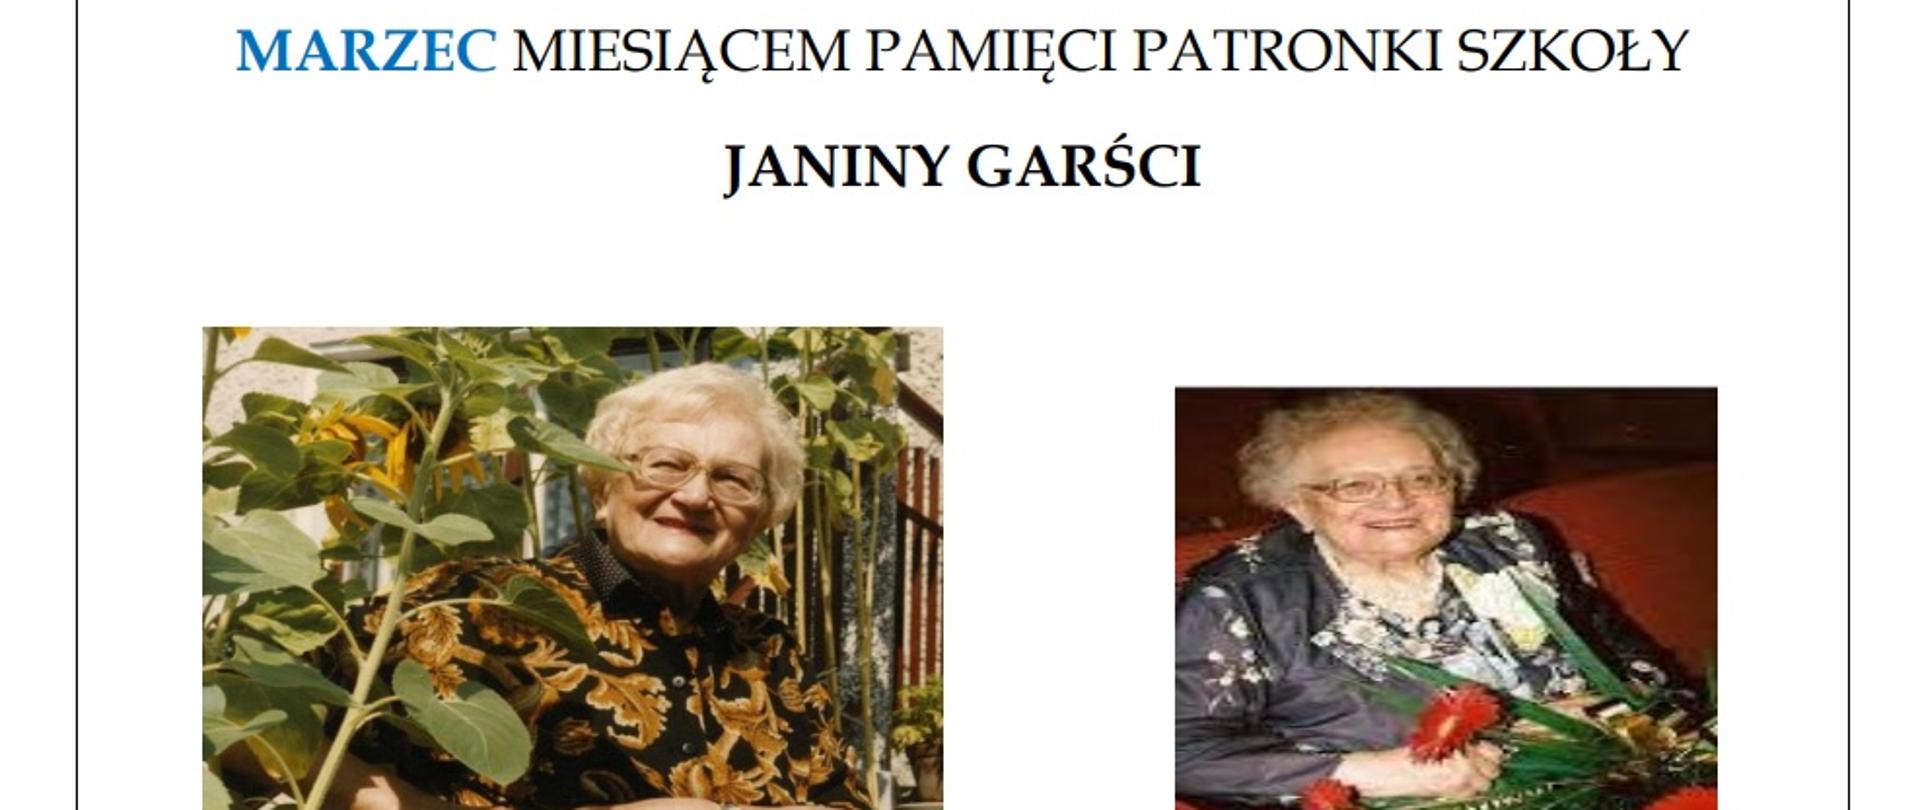 Na białym tle zdjęcia Janiny Garści oraz krótka biografia